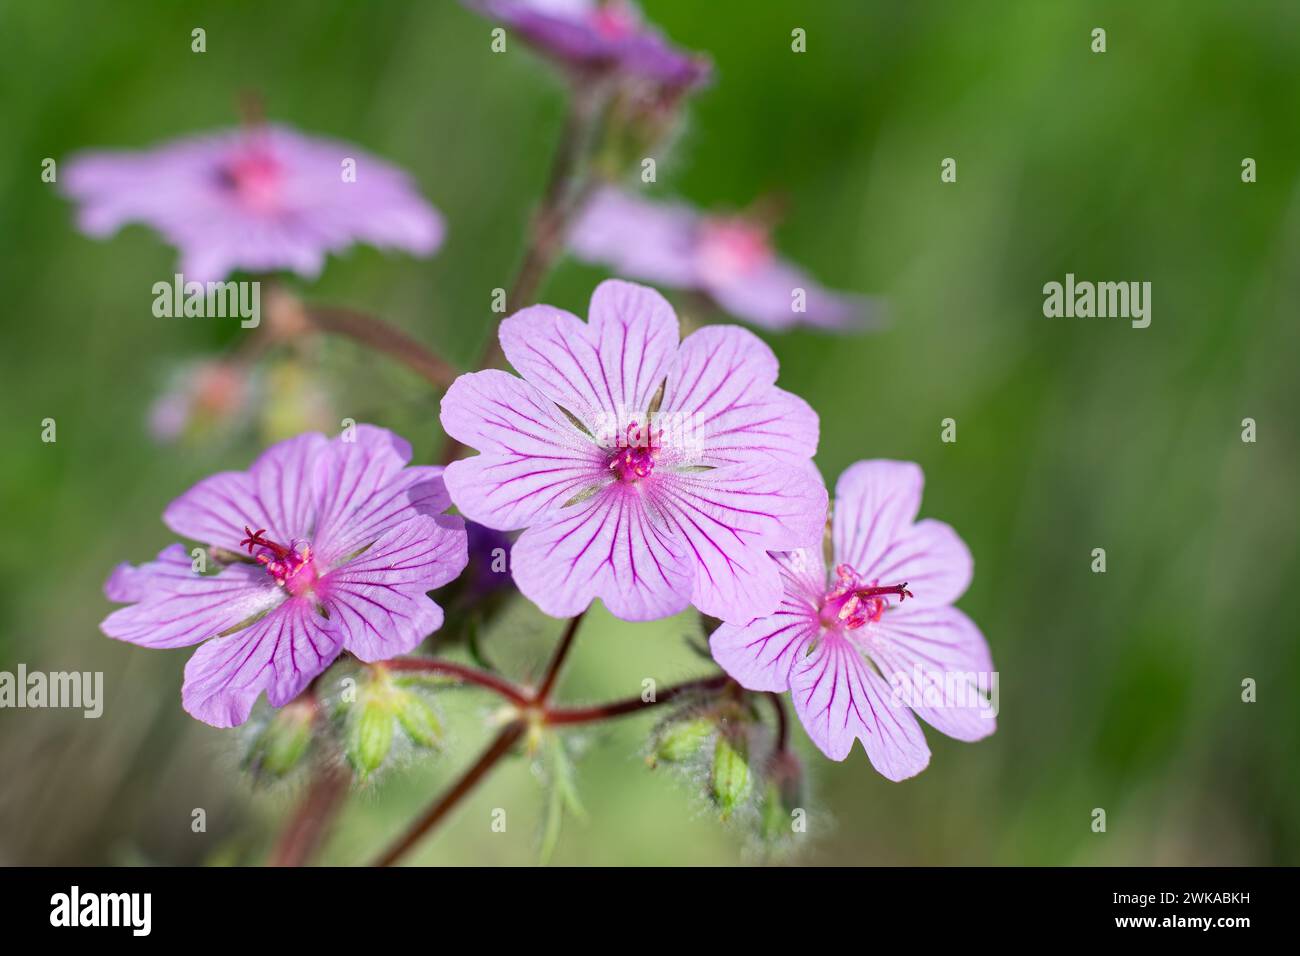 Purple coloured flowers in nature. Wild flower, scientific name; Geranium tuberosum Stock Photo